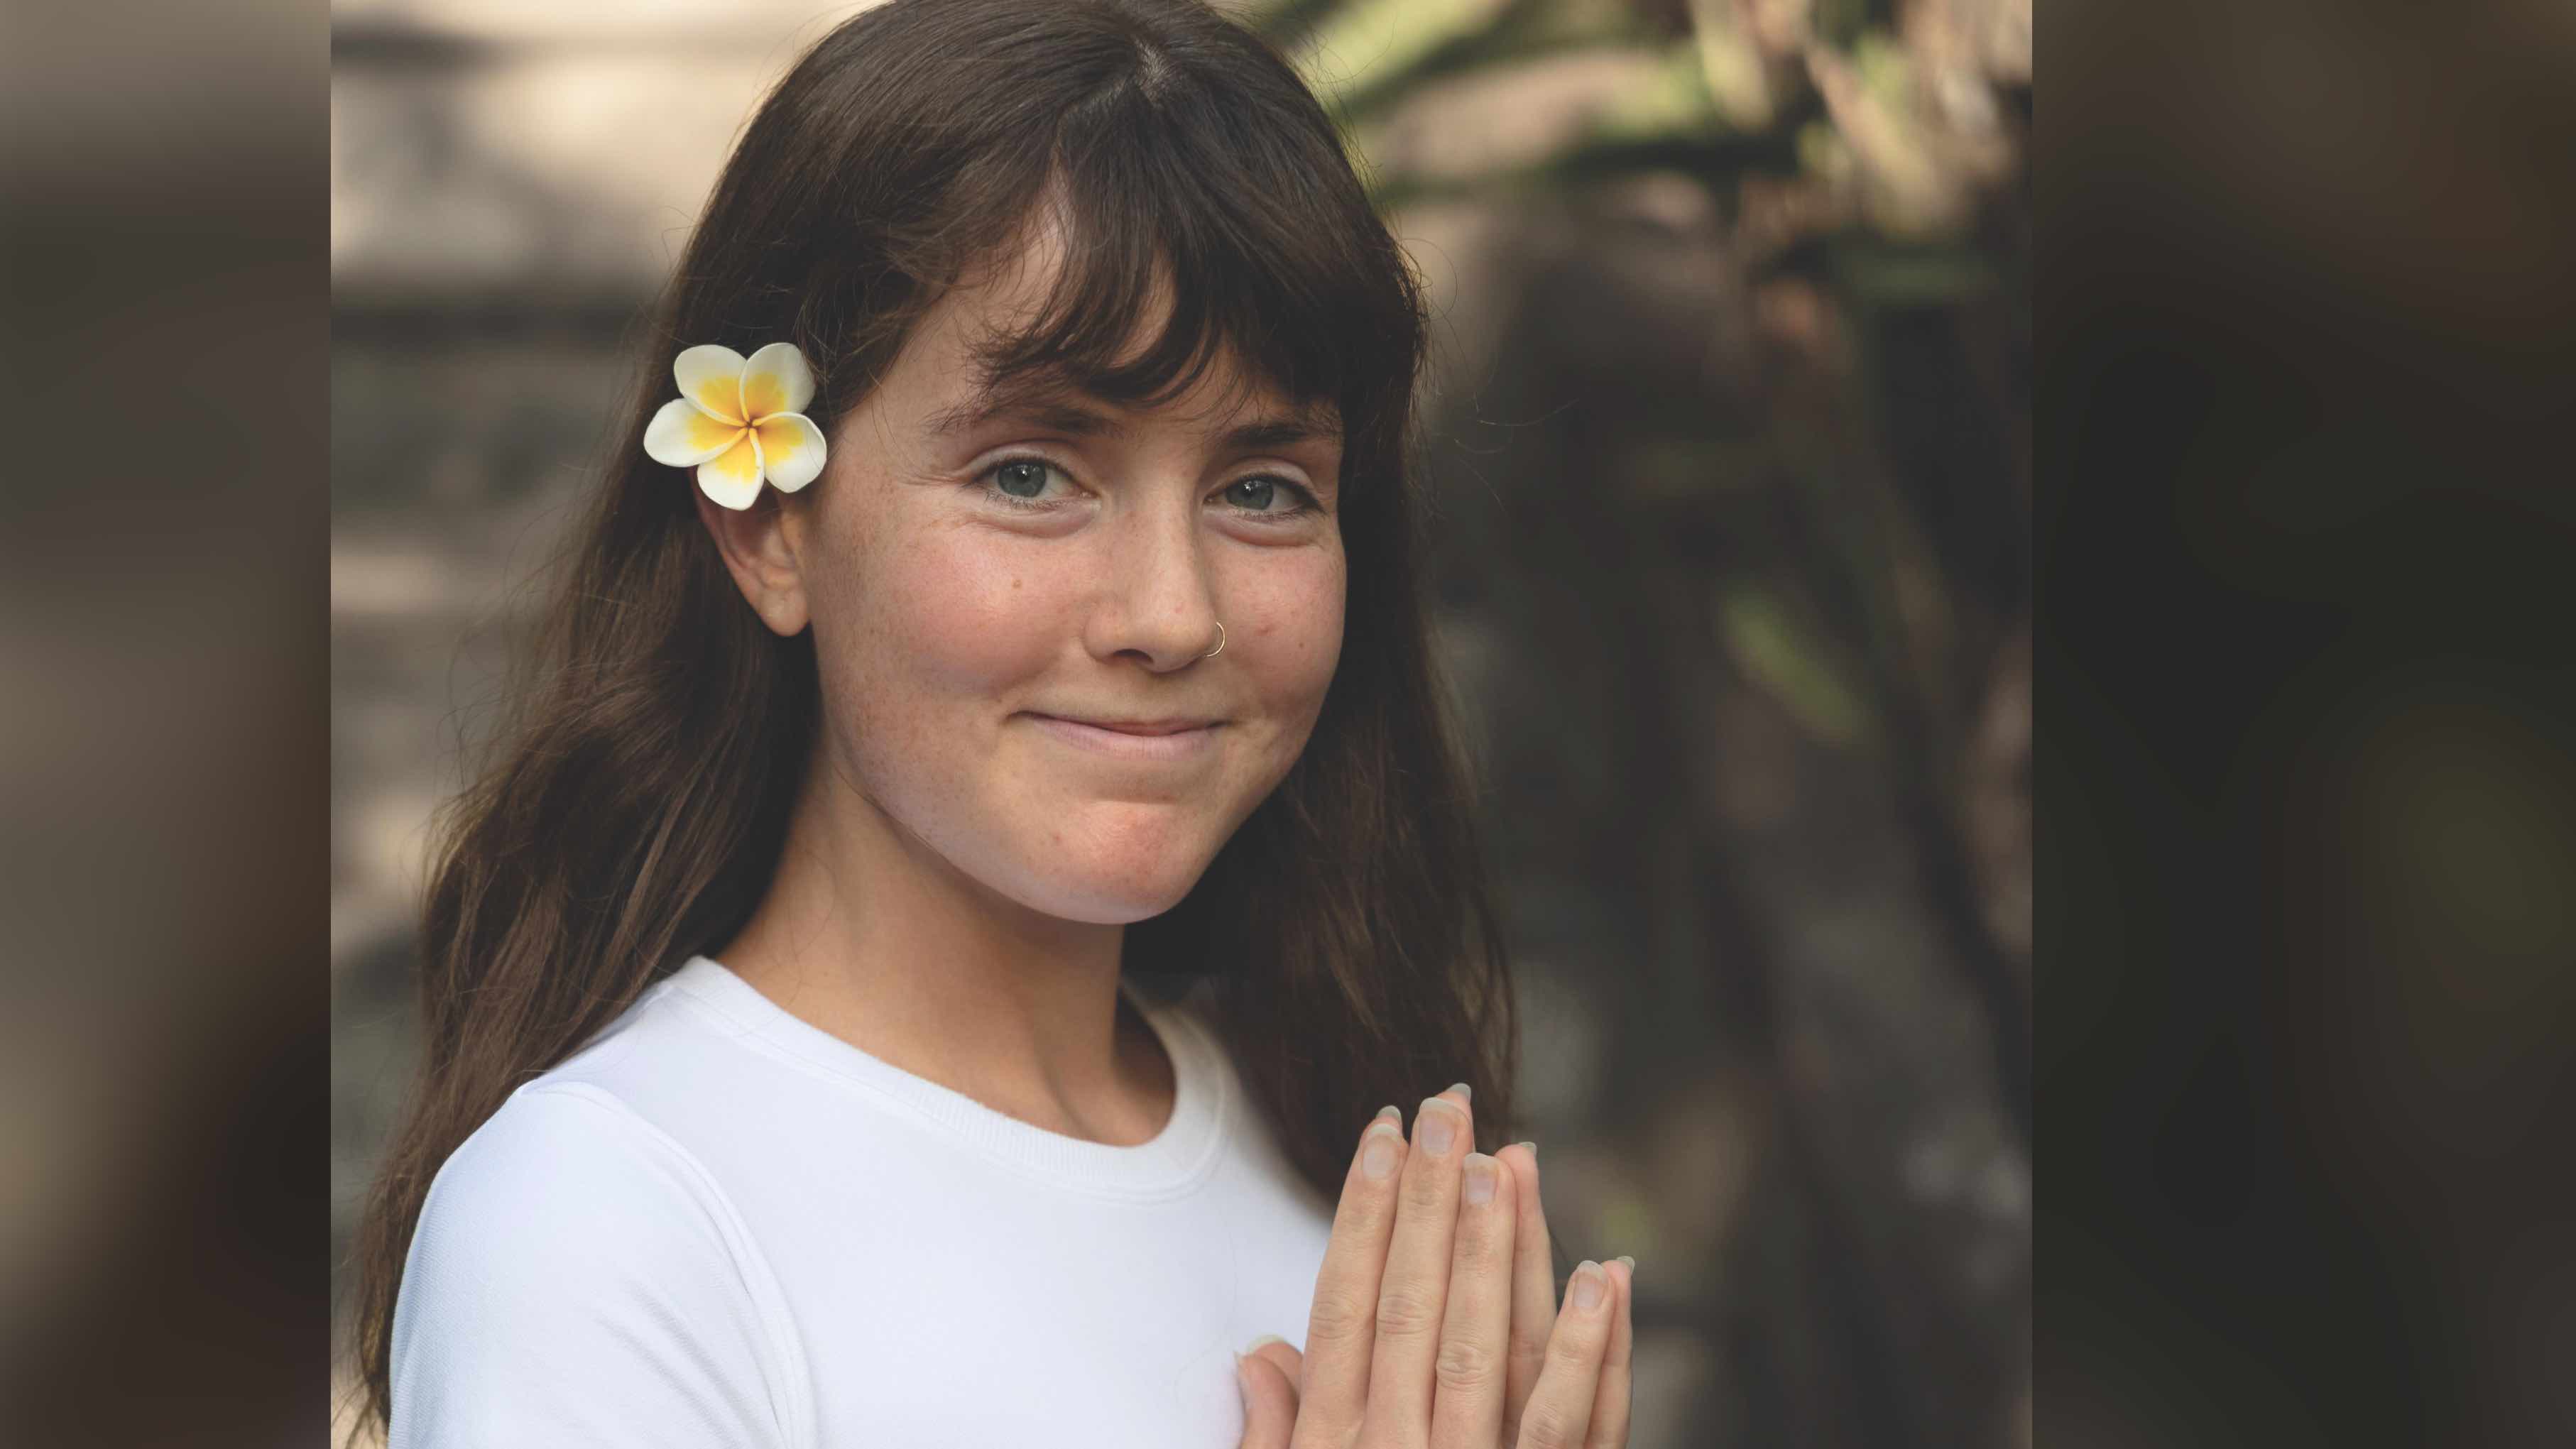 Danèle Déquier a notamment étudié le Yoga en Asie. (photo : Gracieuseté Danèle Dequier)